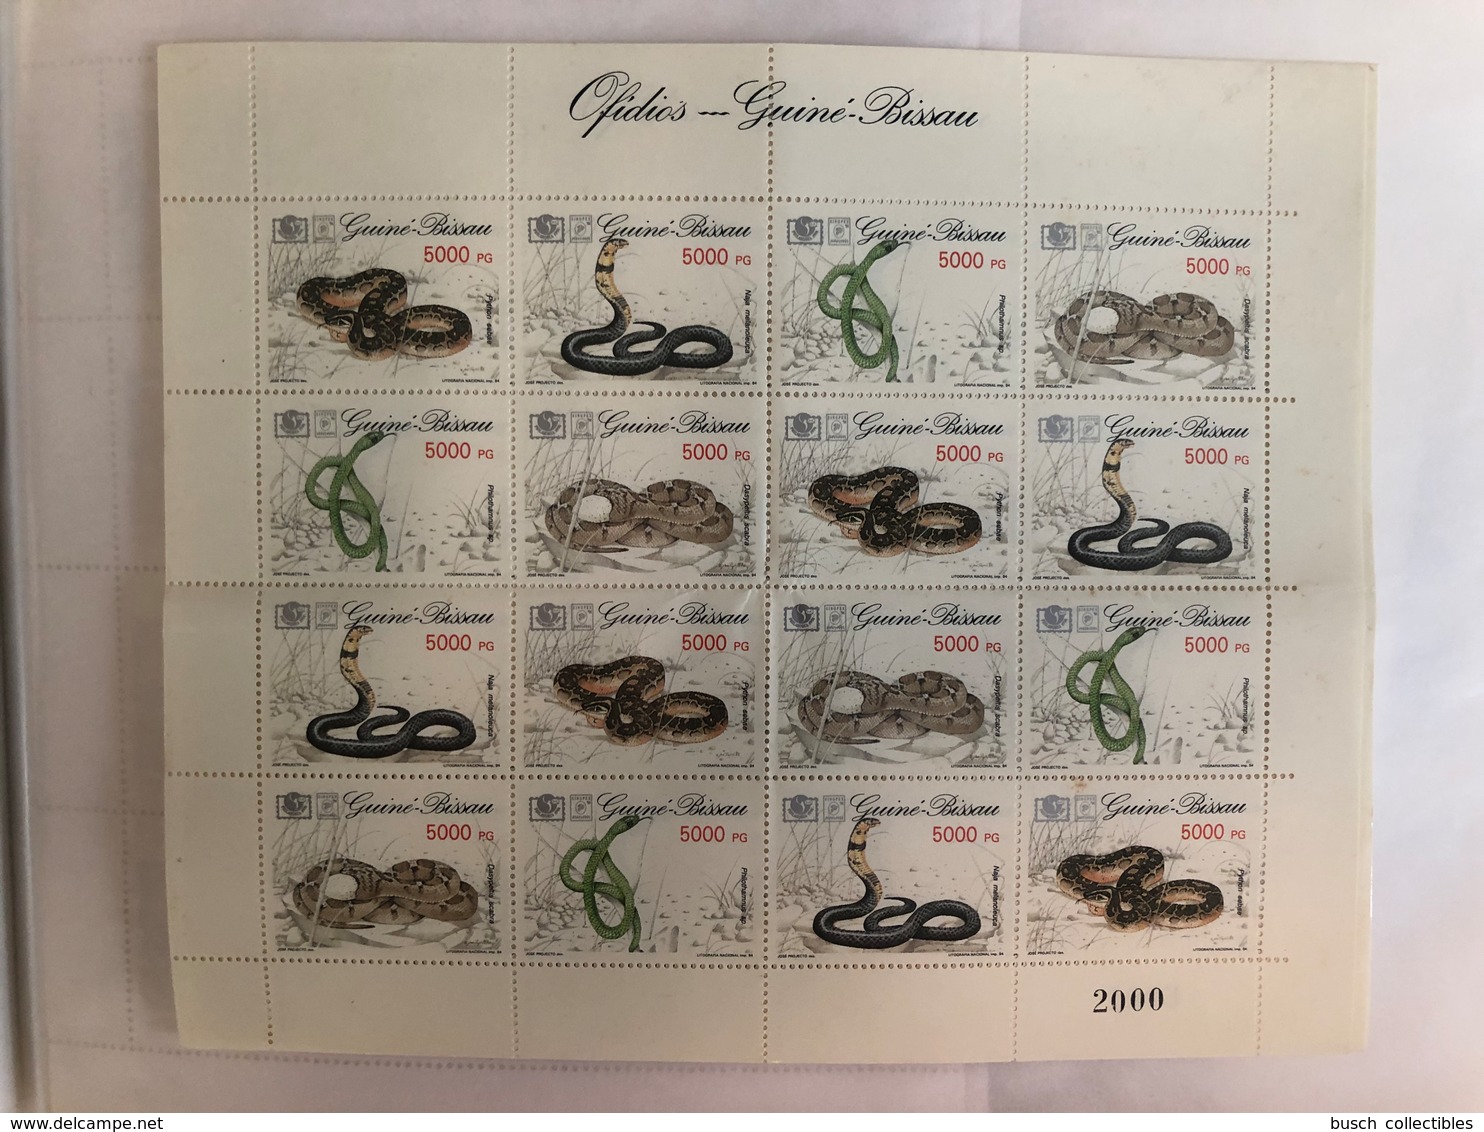 Guiné-Bissau Guinea Guinée 1994 Mi. 1211-1214 Serpents Snakes Schlangen Reptiles Reptilien MNH** - Snakes